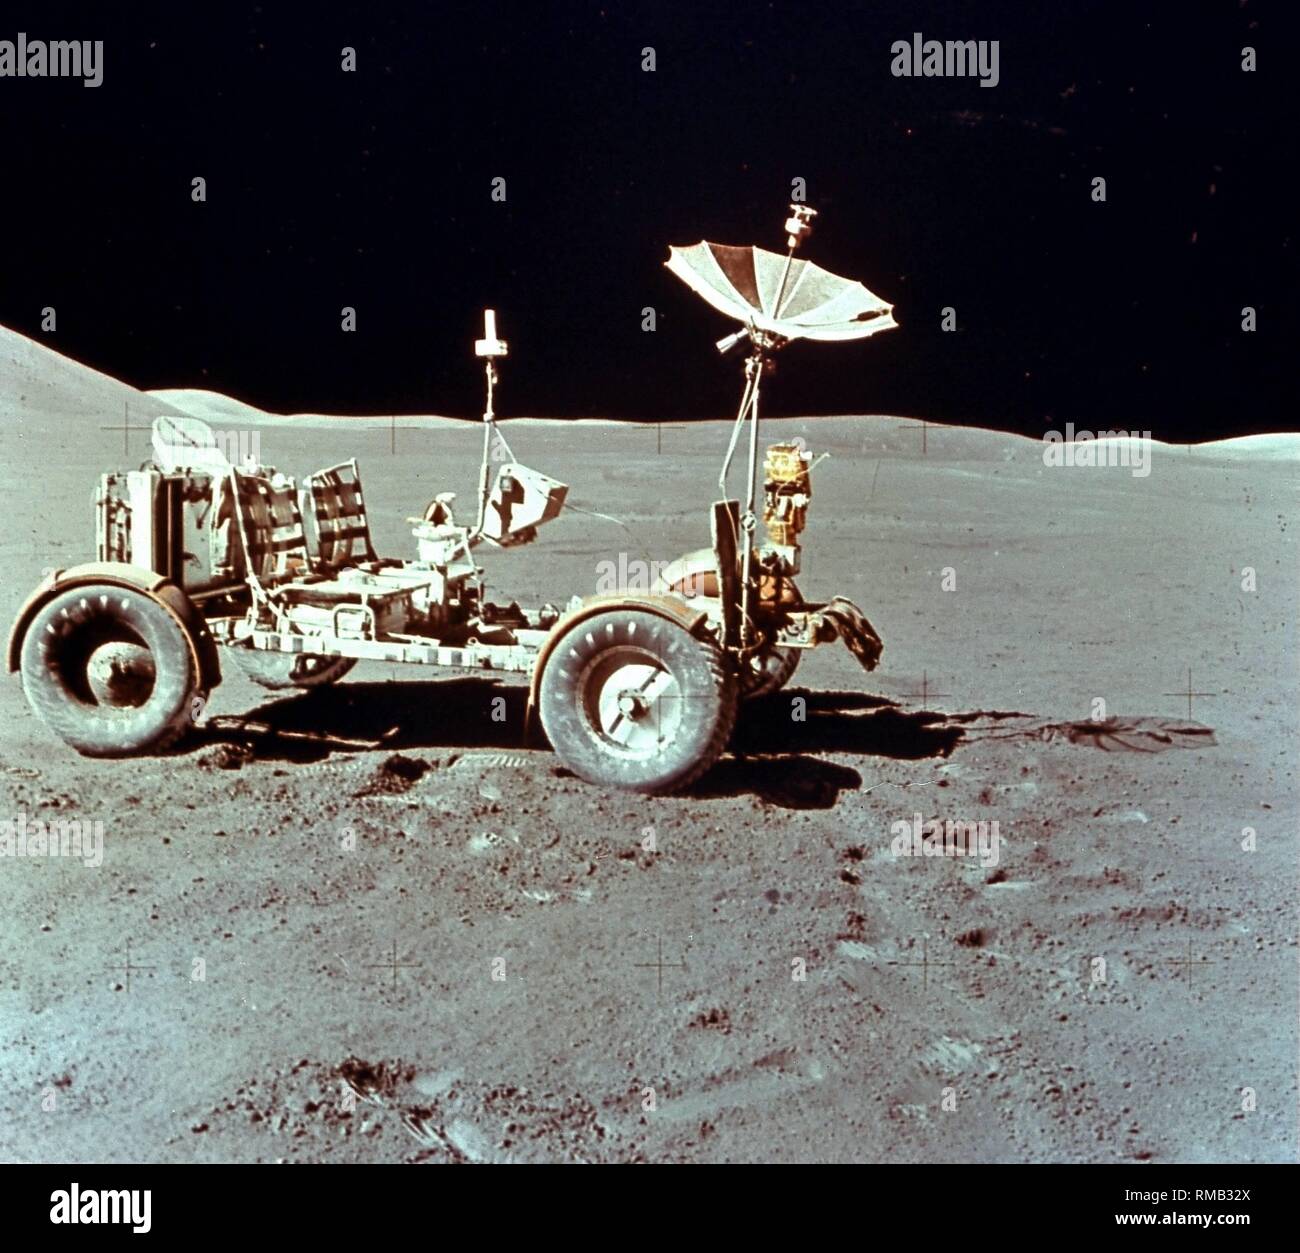 Il rover lunare dell'Apollo 15 la missione di fronte Hadley Mountain. Il rover lunare è stato utilizzato da Apollo 15 (Luglio / Agosto 1972) per la prima volta per studiare la geologia della luna. È stato il primo rover lunare che potrebbe eseguire due astronauti. Foto Stock